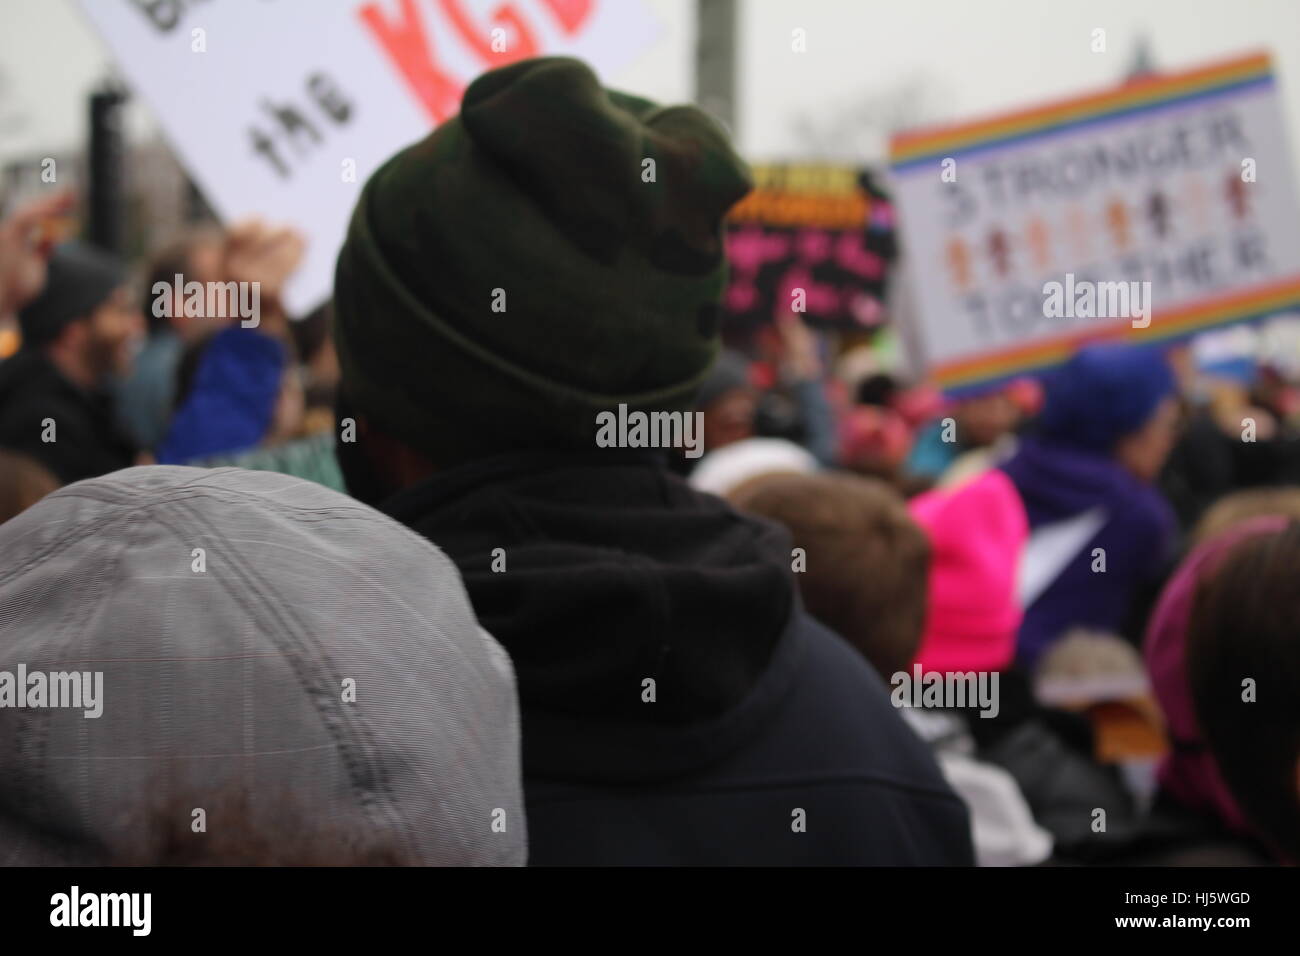 Distrikt von Columbia, USA. 21 Jan, 2017. Ein Mann schaut auf die Demonstranten auf der Constitution Avenue NW, das Washington Monument, das sich in der Ferne gesehen marschieren. Stockfoto